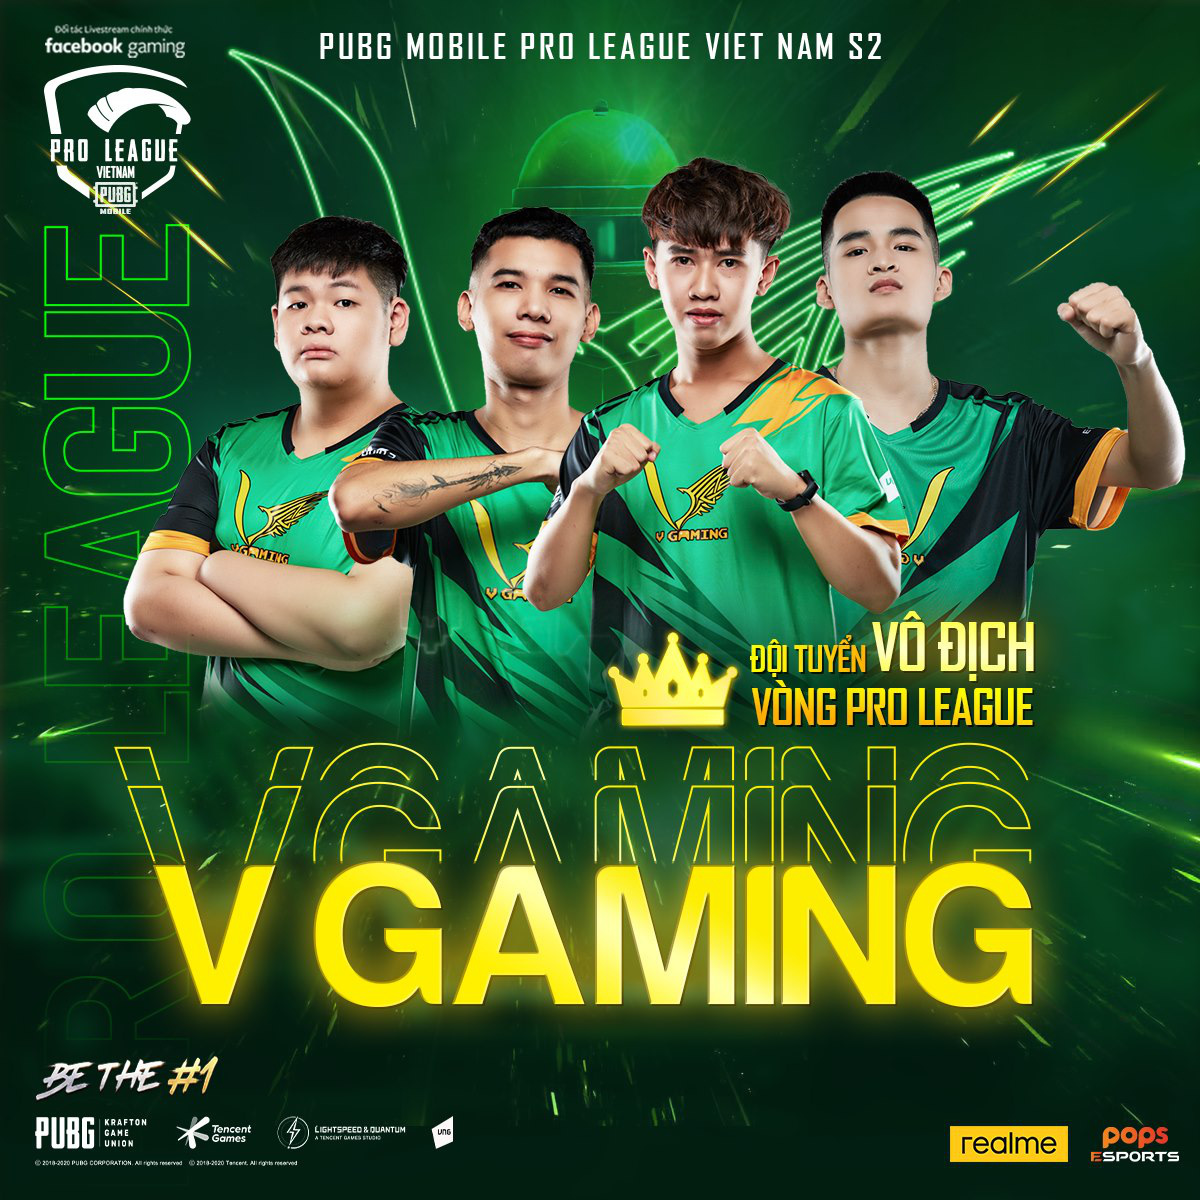 PMPL VN S2 - Tuần 3: V Gaming xuất sắc trở thành nhà vô địch vòng Pro League, “cựu vương” cũng kịp tăng tốc để chiếm lấy vị trí thứ 2 - Ảnh 1.